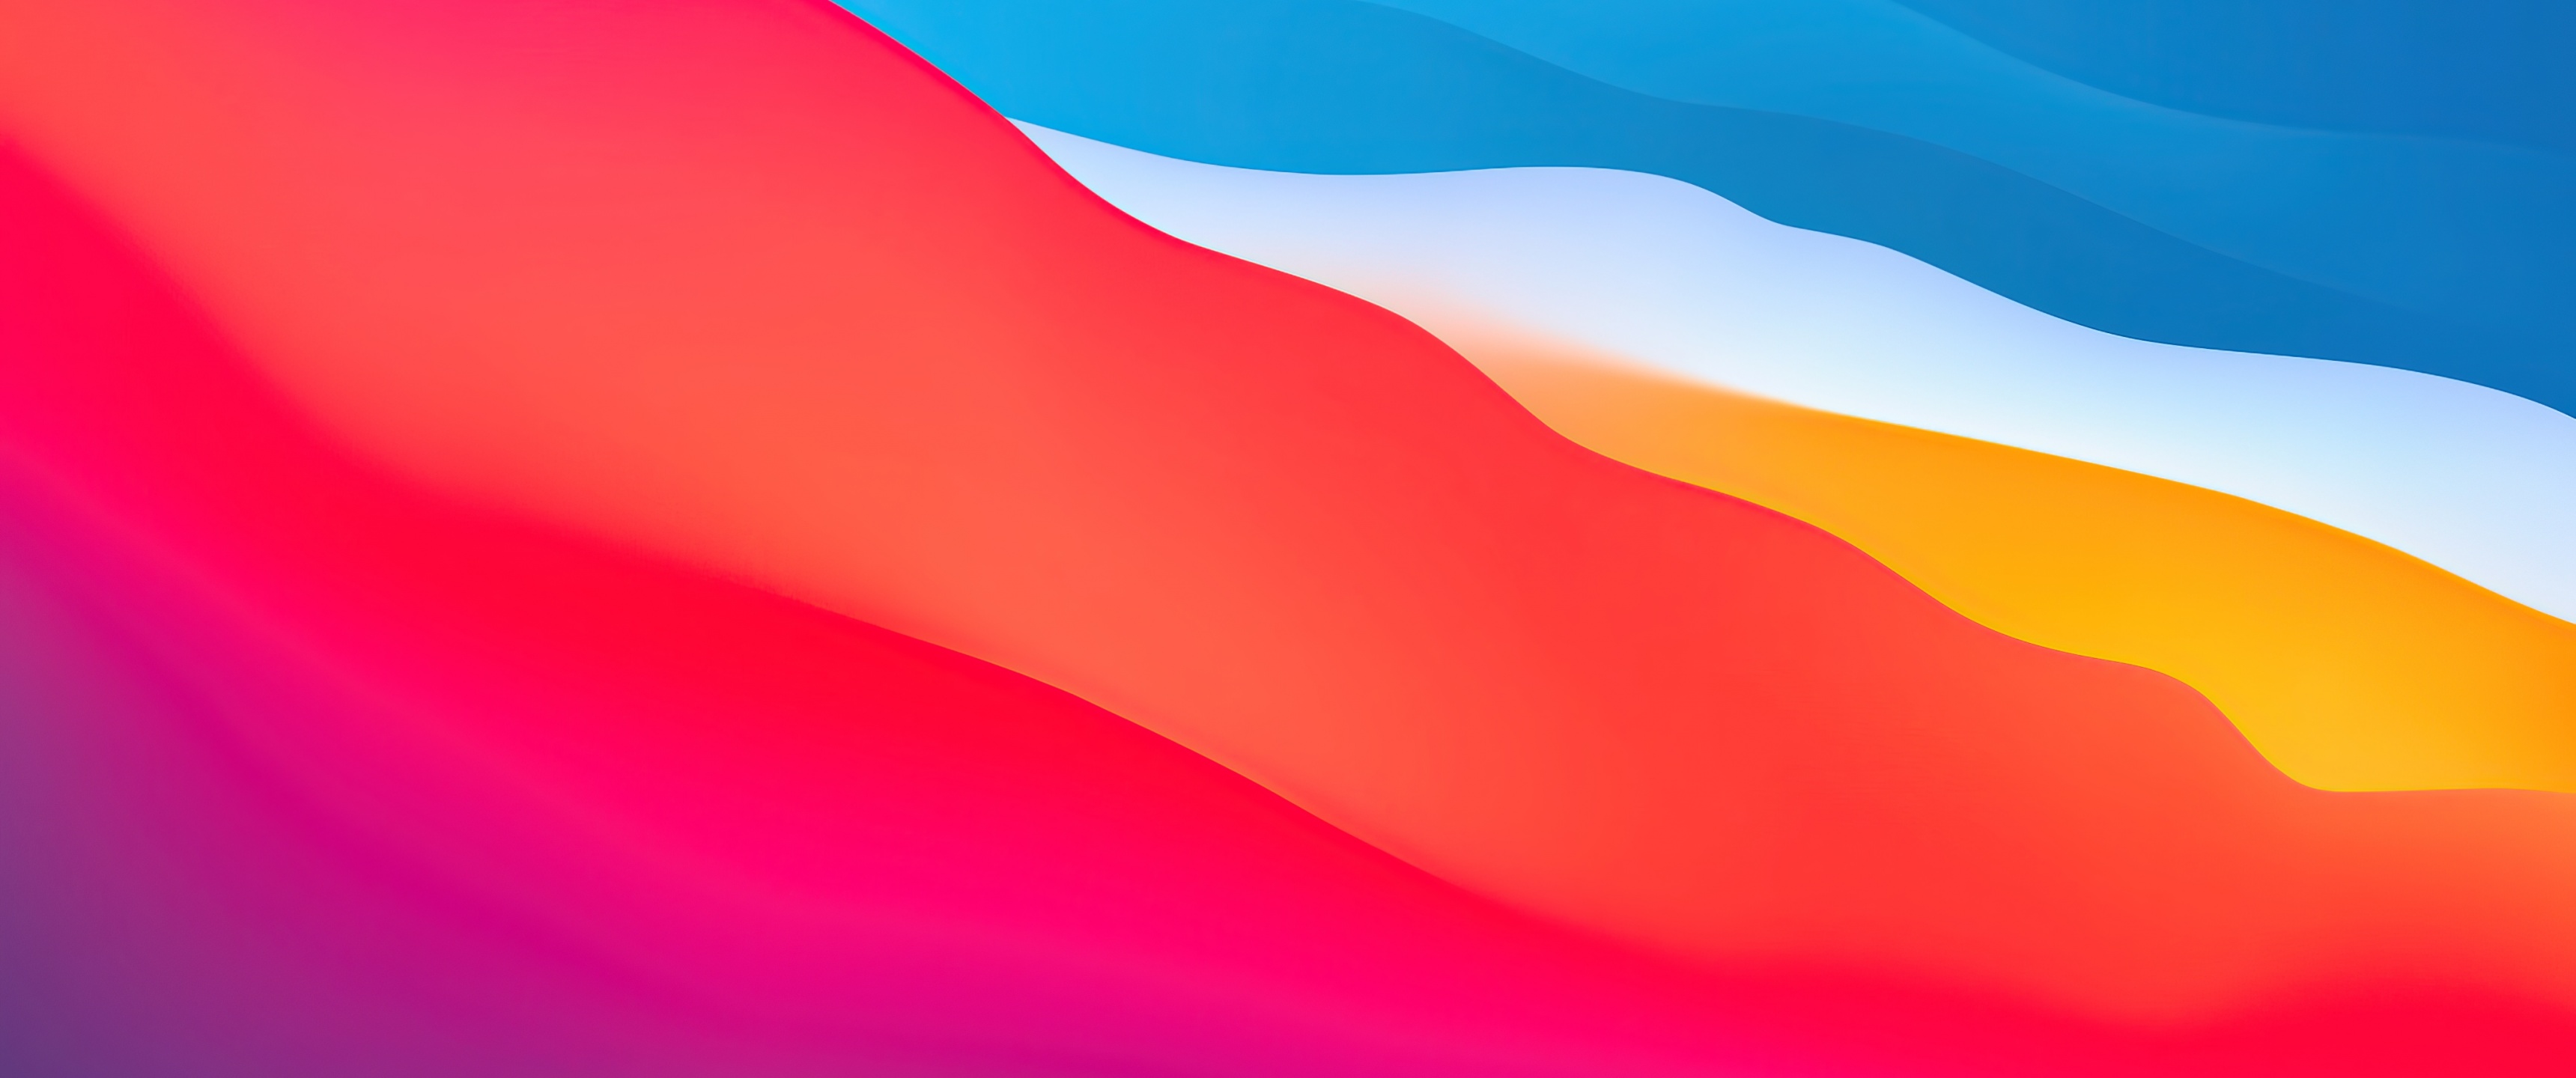 Hình nền macOS Big Sur là điểm nhấn tuyệt vời để bạn trang trí cho chiếc máy tính yêu quý của mình. Với sự kết hợp tuyệt vời giữa sắc xanh dương và tím, hình nền này sẽ khiến cho mỗi lần sử dụng máy tính của bạn trở nên thật sự đặc biệt và độc đáo. Hãy để mắt được ngắm nhìn vẻ đẹp của hình nền này và cùng trải nghiệm nhé!